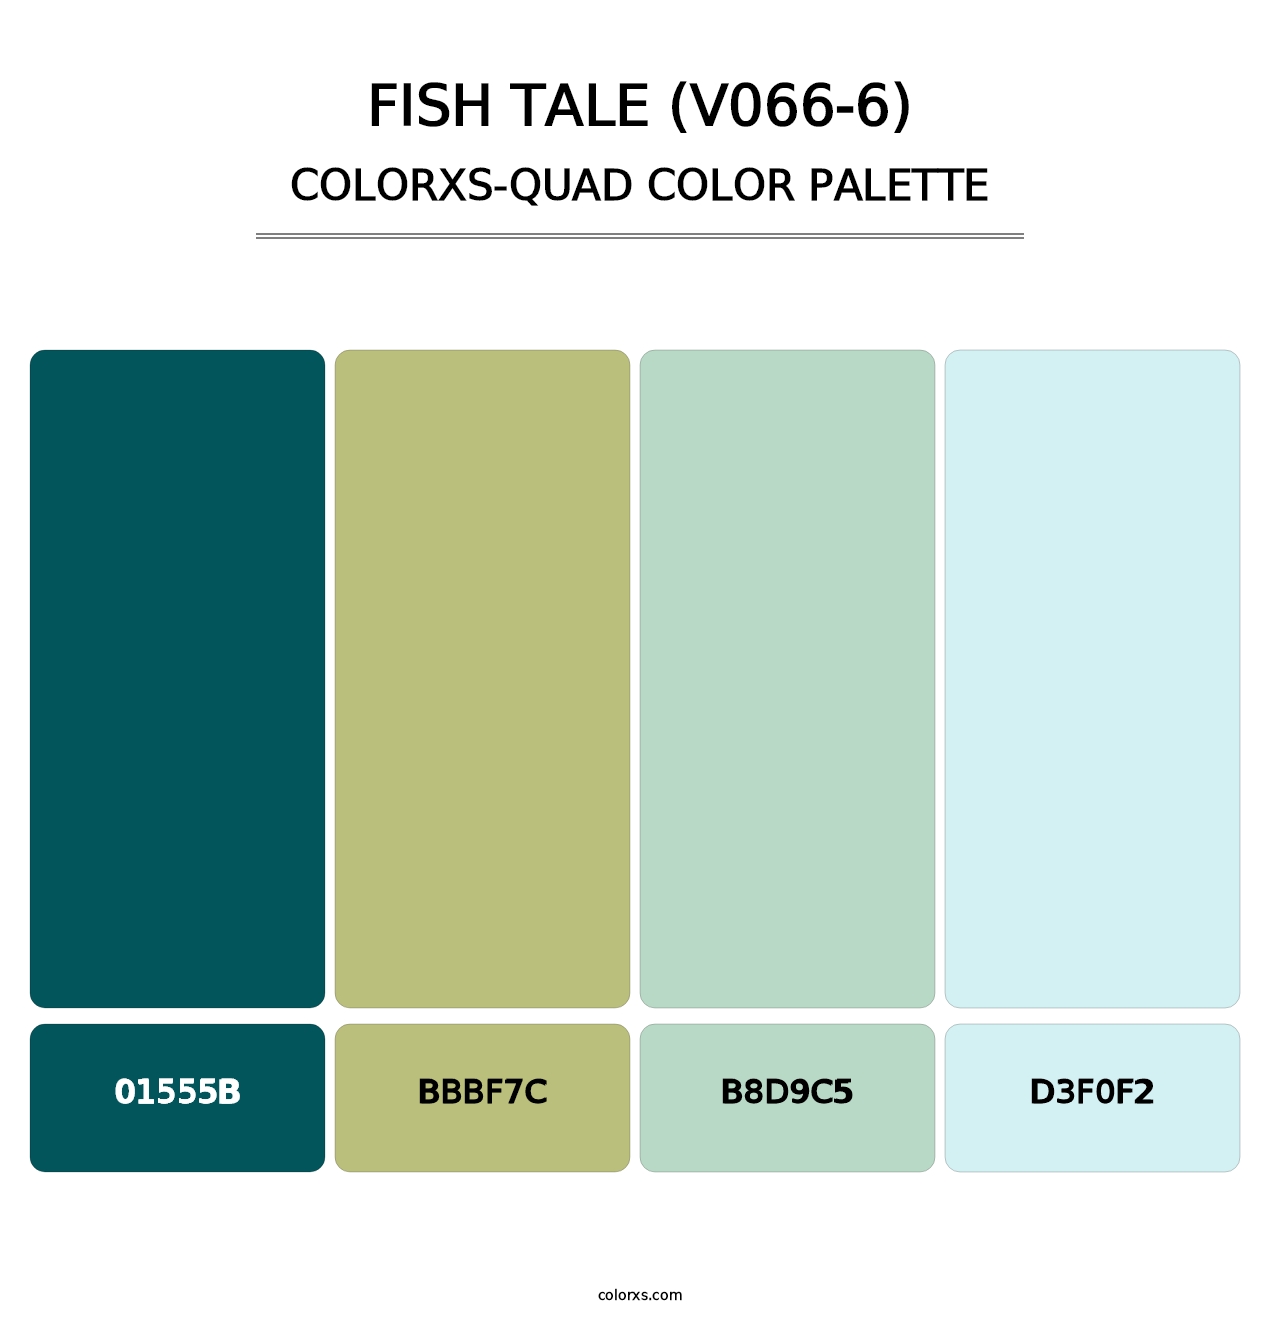 Fish Tale (V066-6) - Colorxs Quad Palette